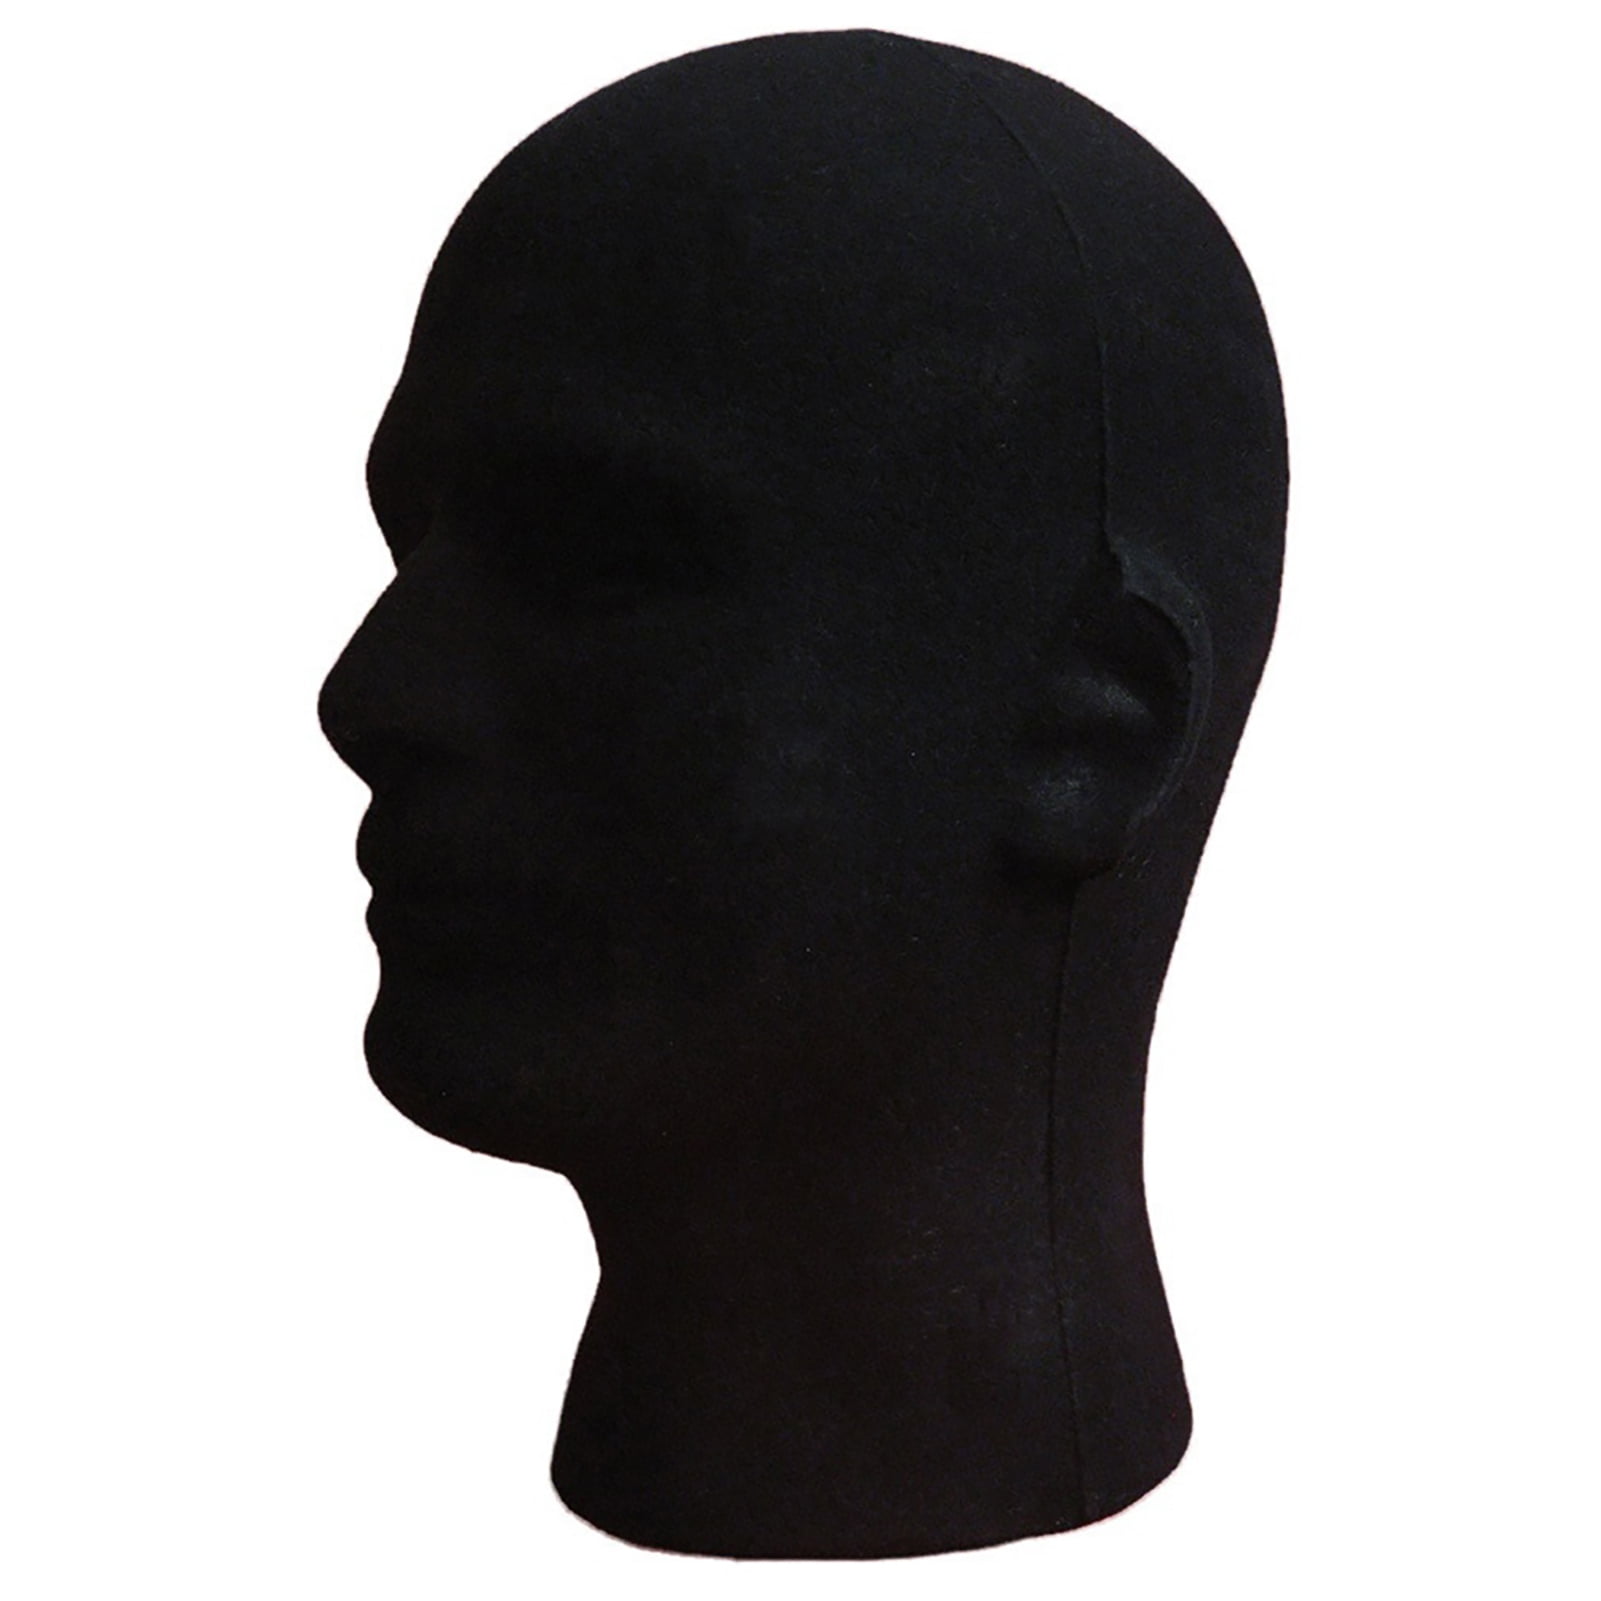 Male STYROFOAM FOAM black velvet like MANNEQUIN head display wig hat glasses 2pc 